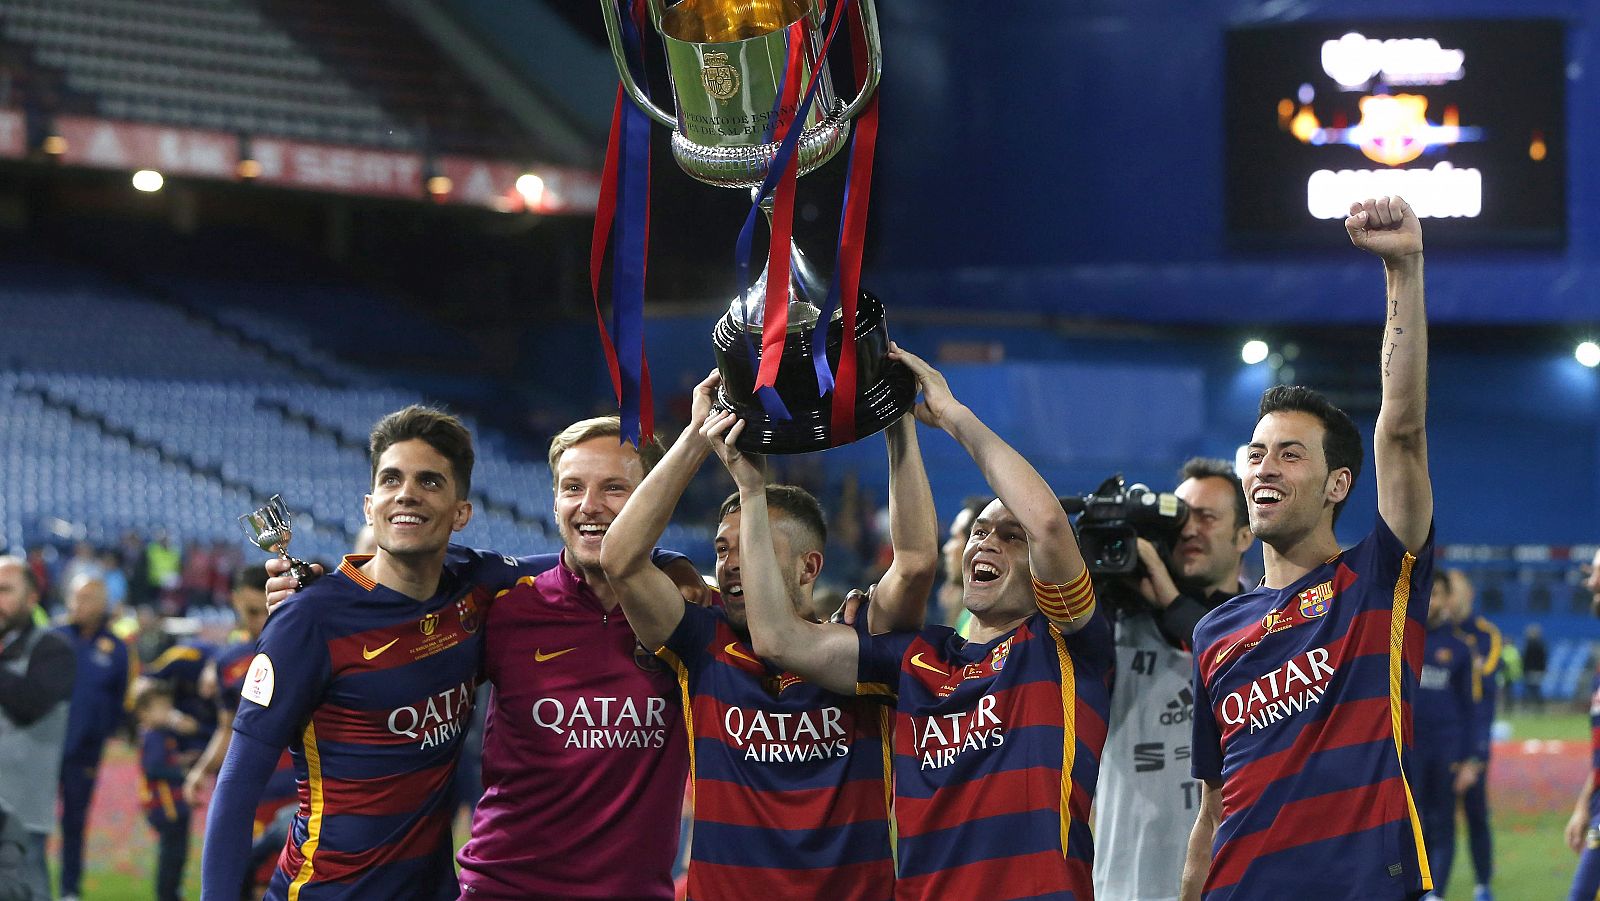 Iniesta levanta la Copa del Rey junto a sus compañeros Bartra, Rakitic, Jordi Alba y Busquets.